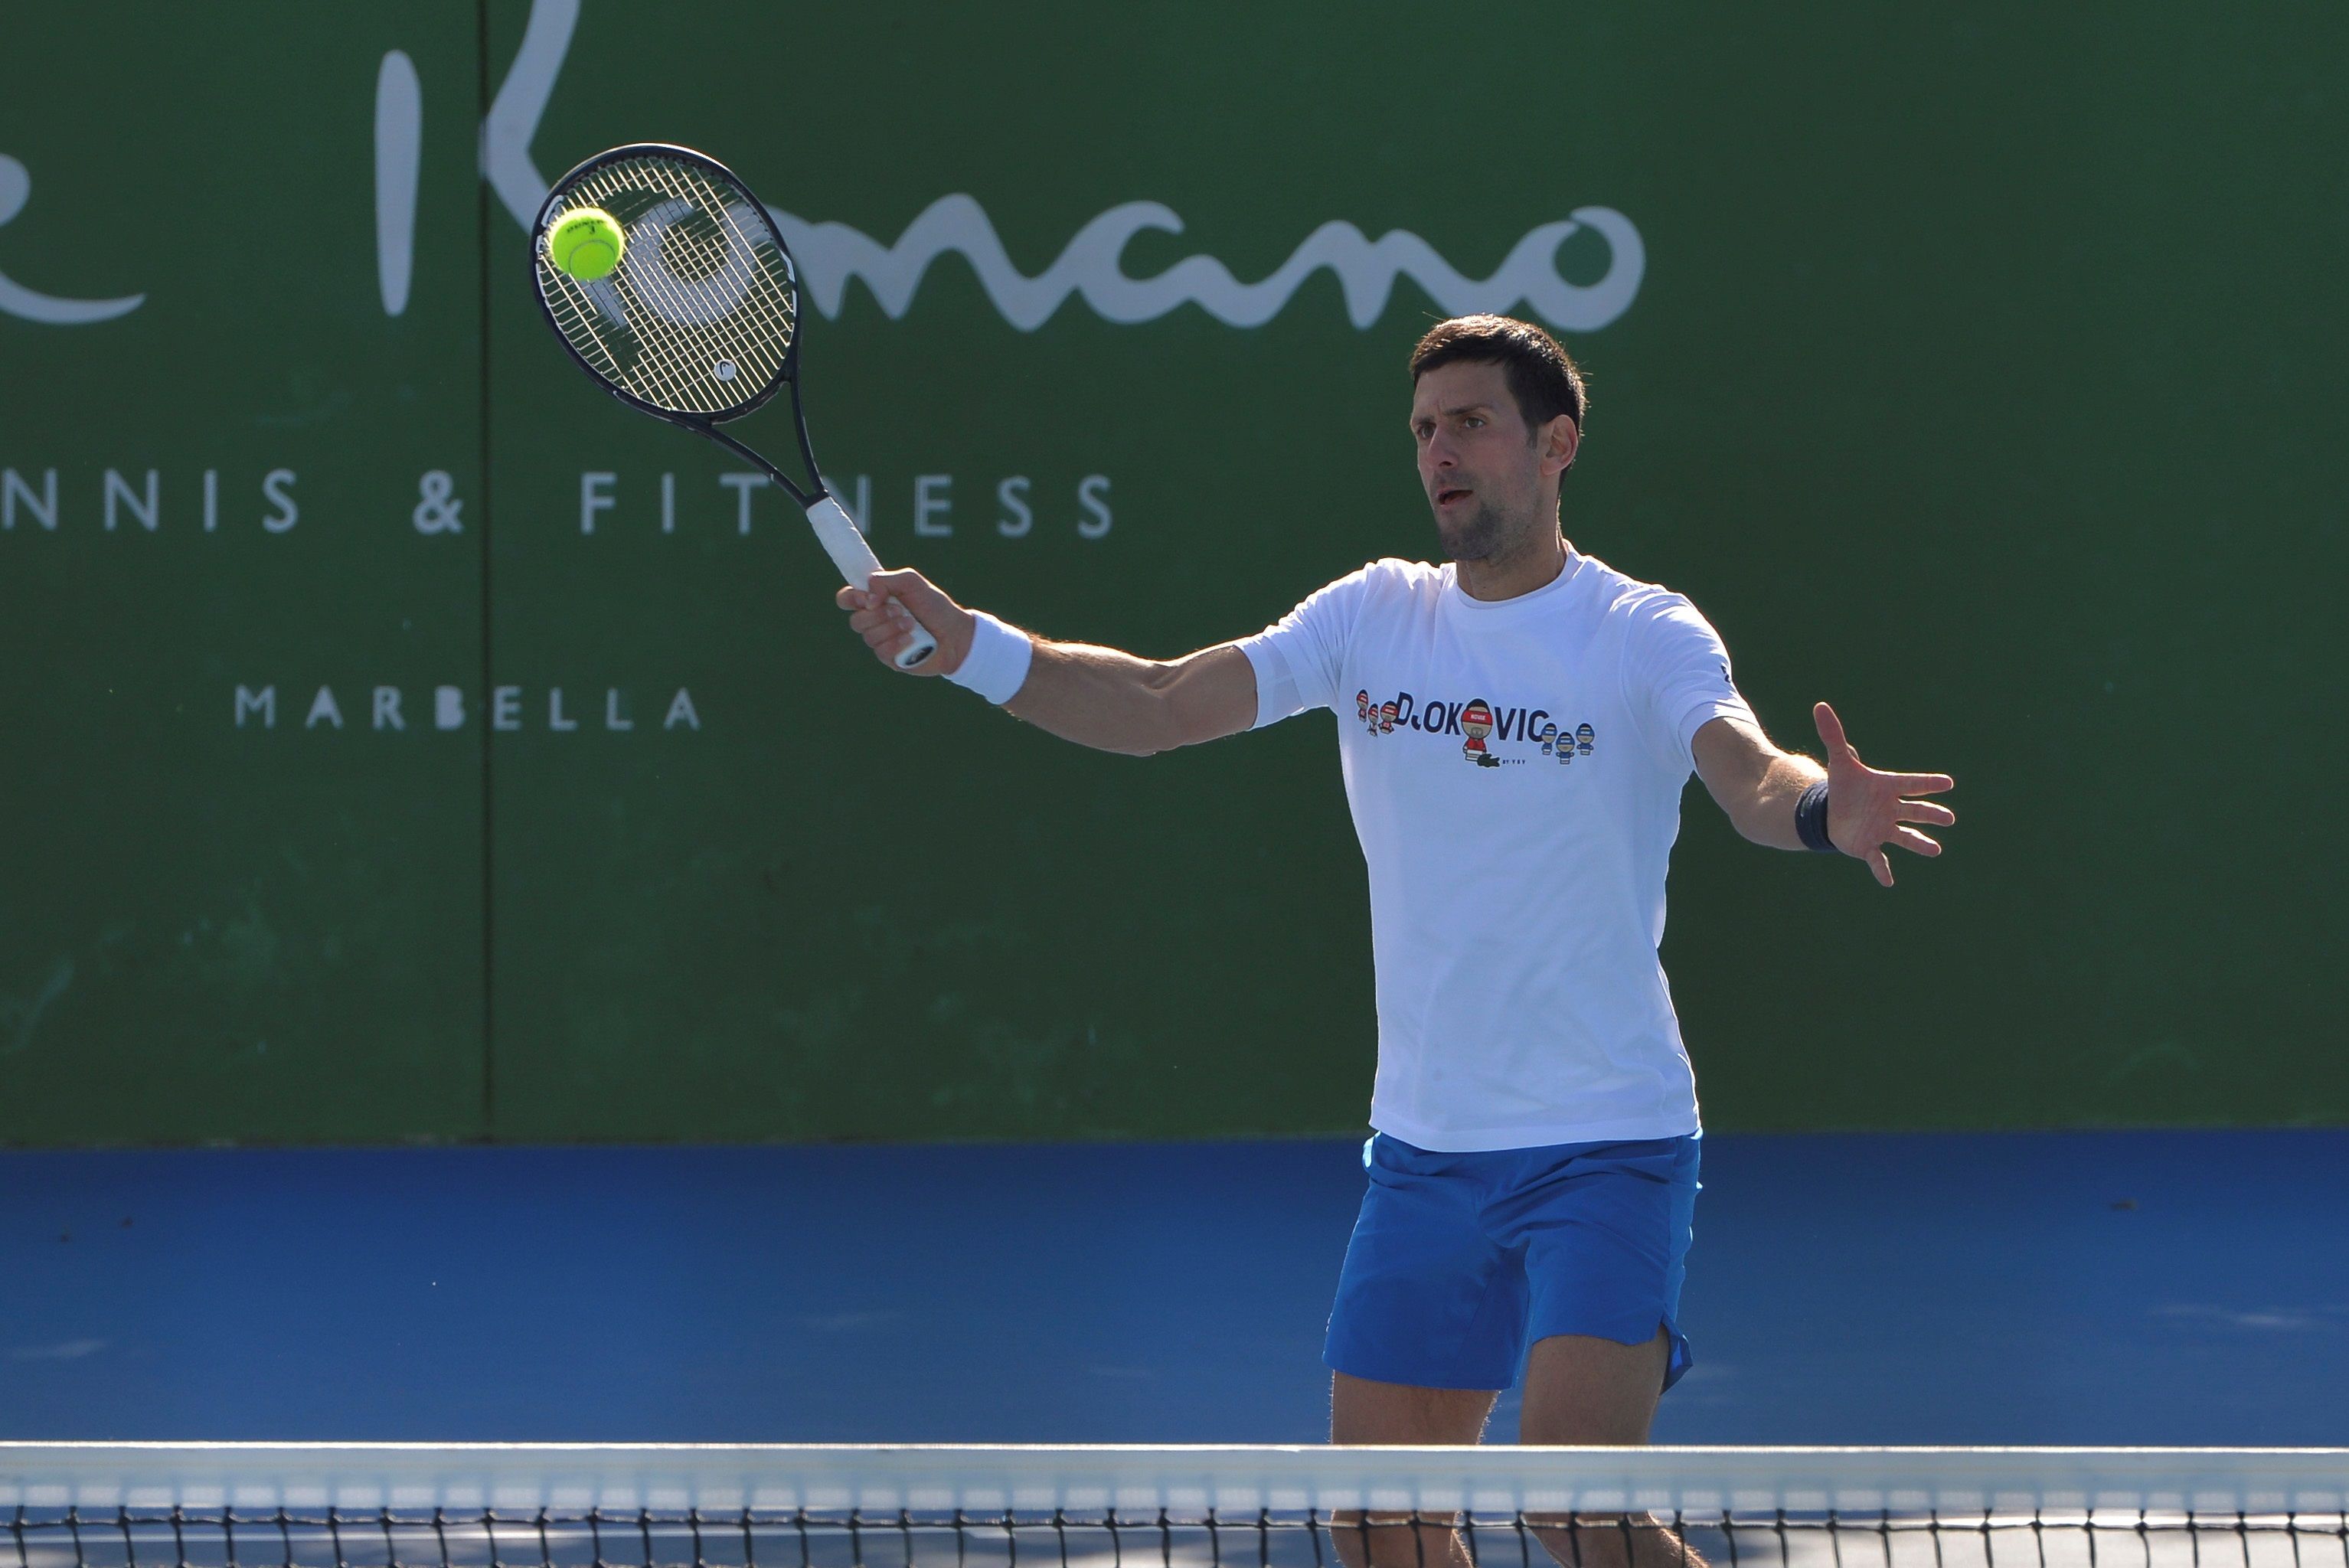 El tenista Novak Djokovic será uno de los que reciban trato diferenciado previo al Abierto de Australia. (Foto Prensa Libre: EFE)